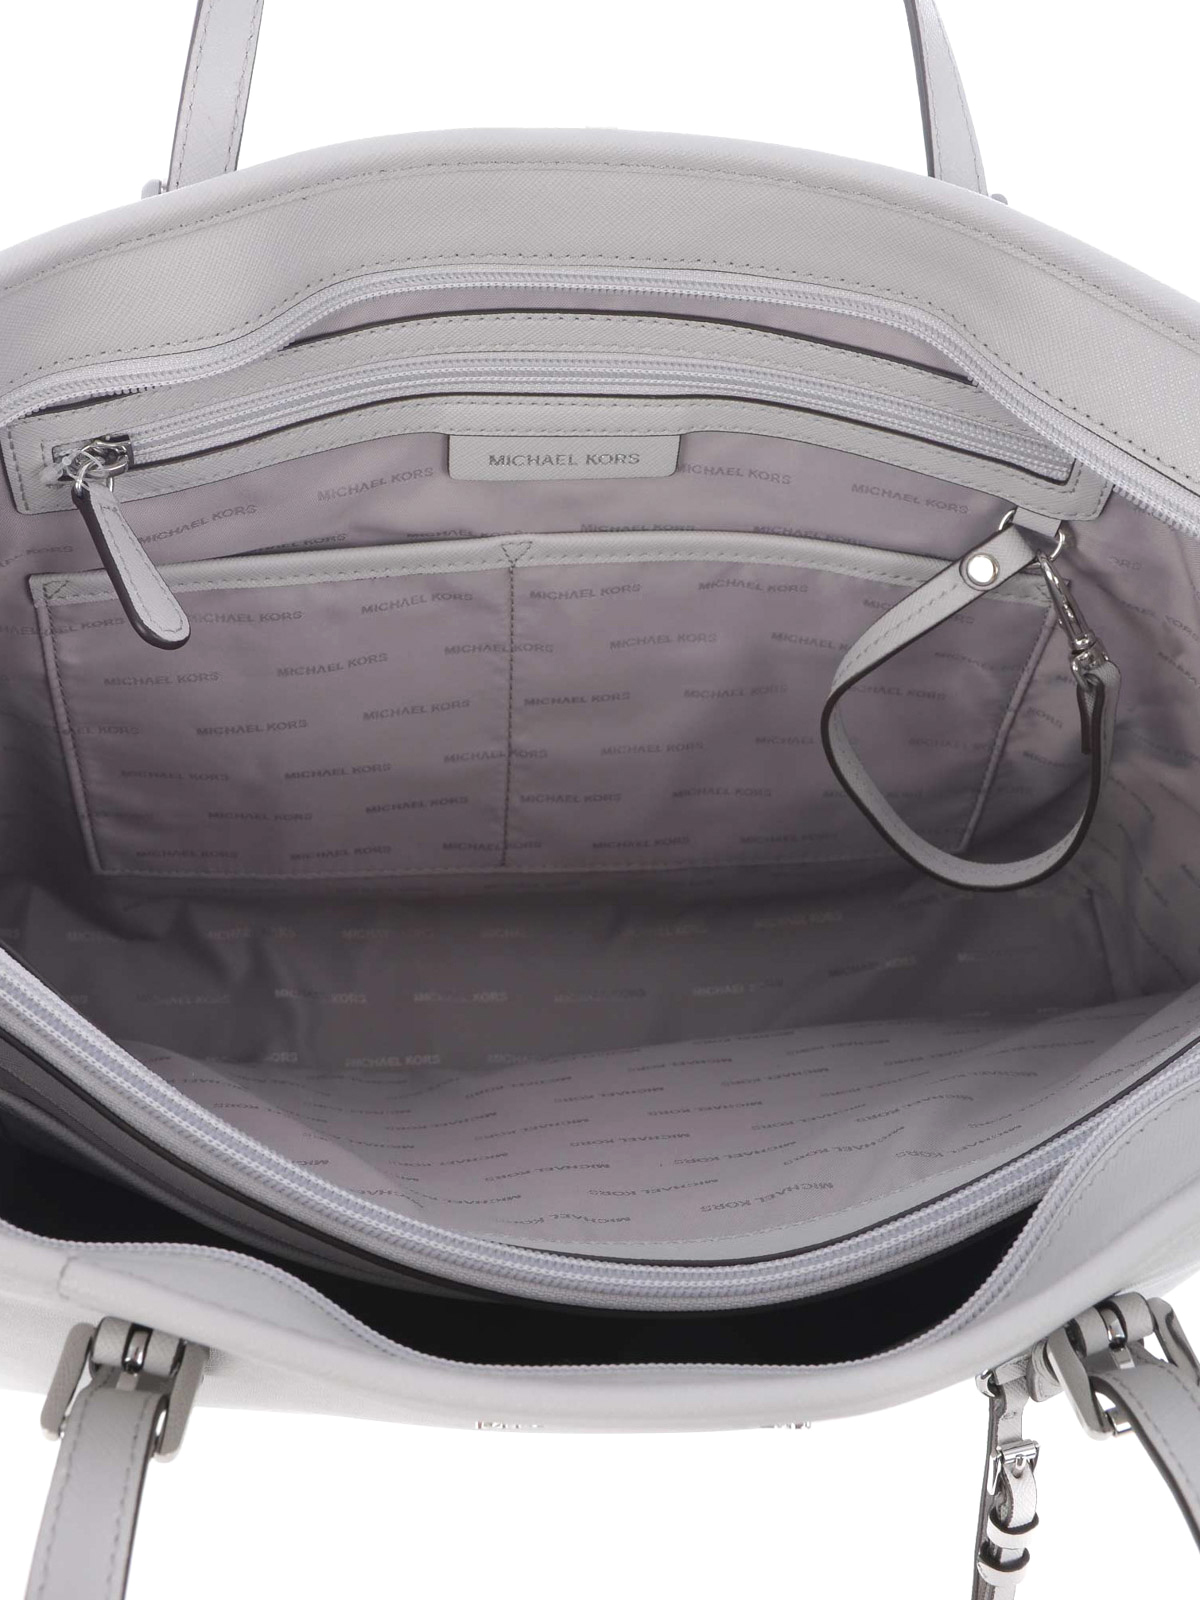 Michael Kors, Bags, Michael Kors Jet Set Travel Tote Pearl Grey